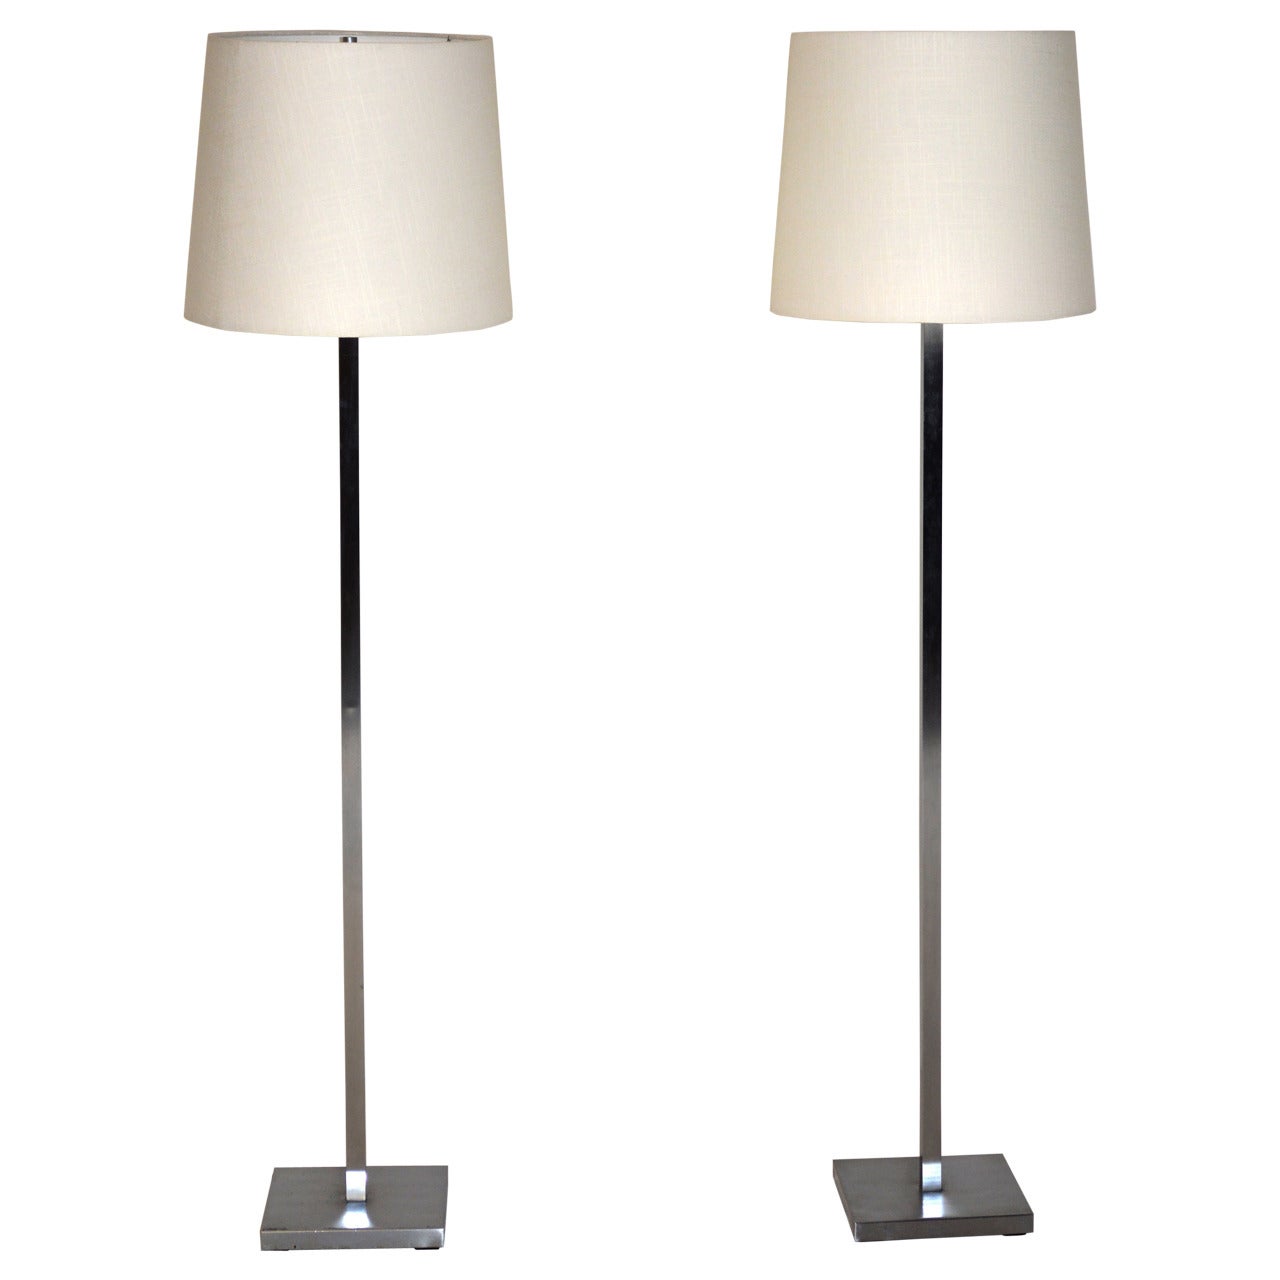 Pair of Mid-Century Aluminum Floor Lamps